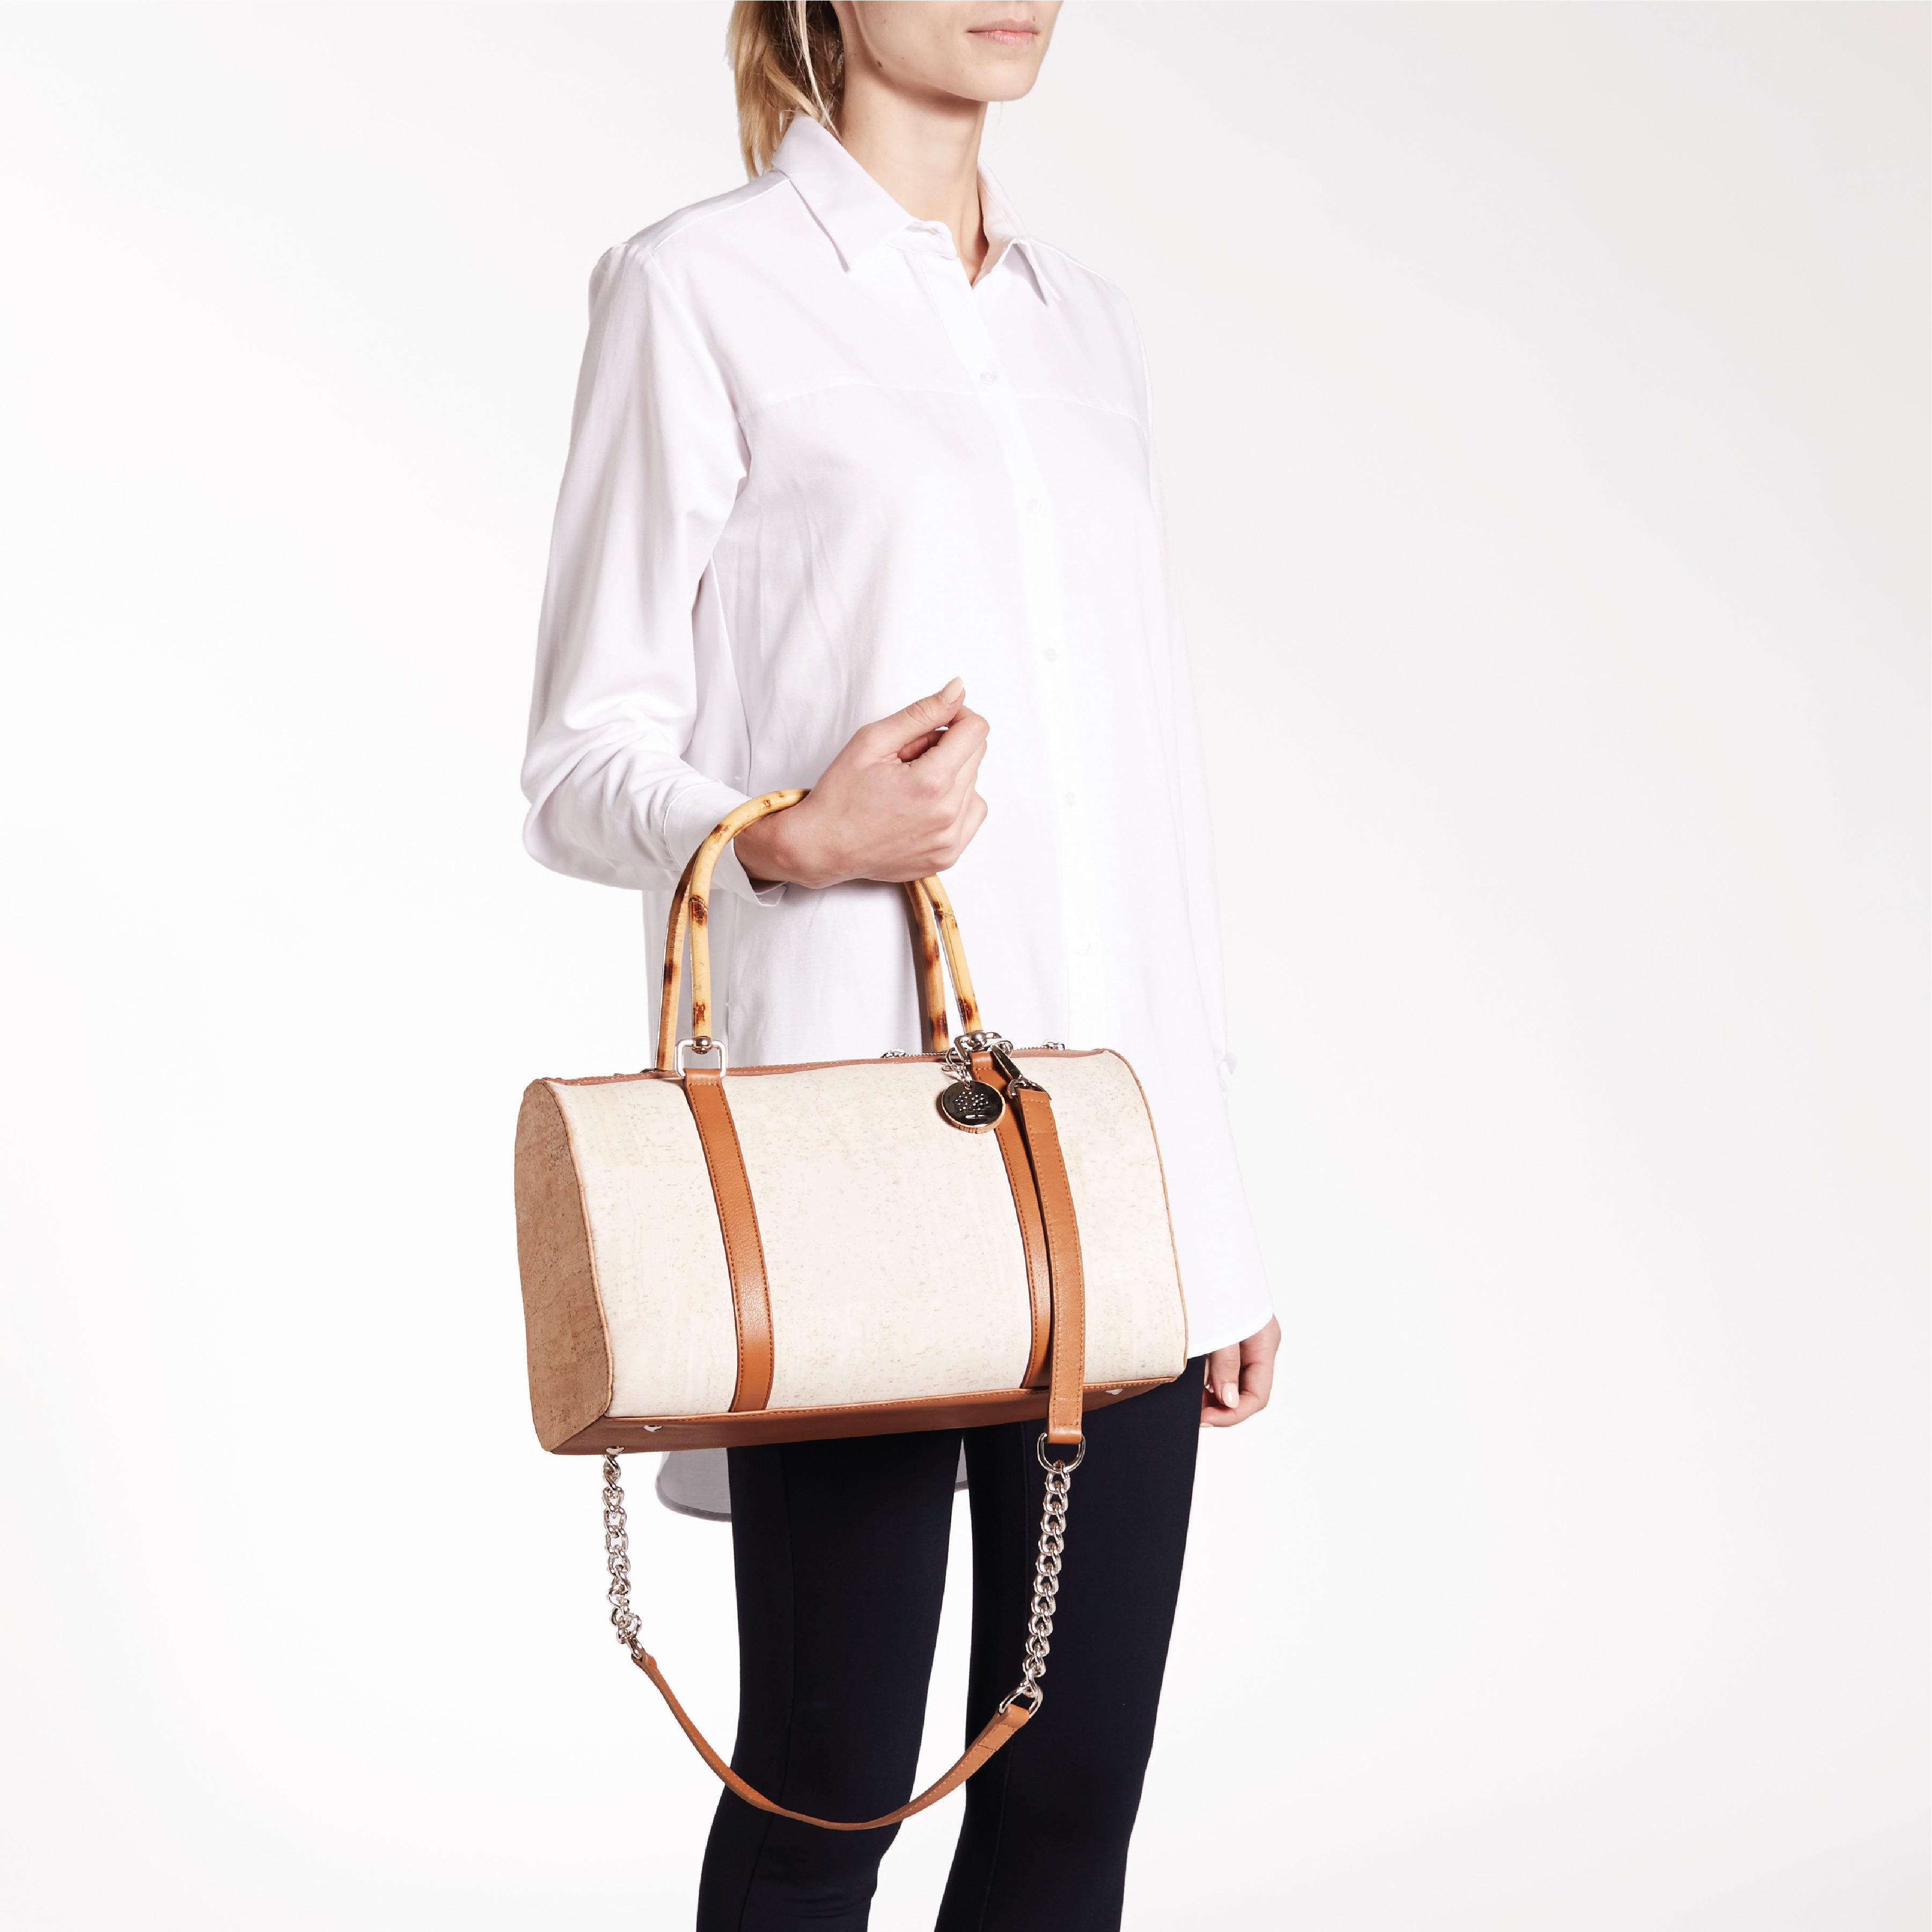 Papaya Handbag in cork | Women's Handbags – Pelcor Store